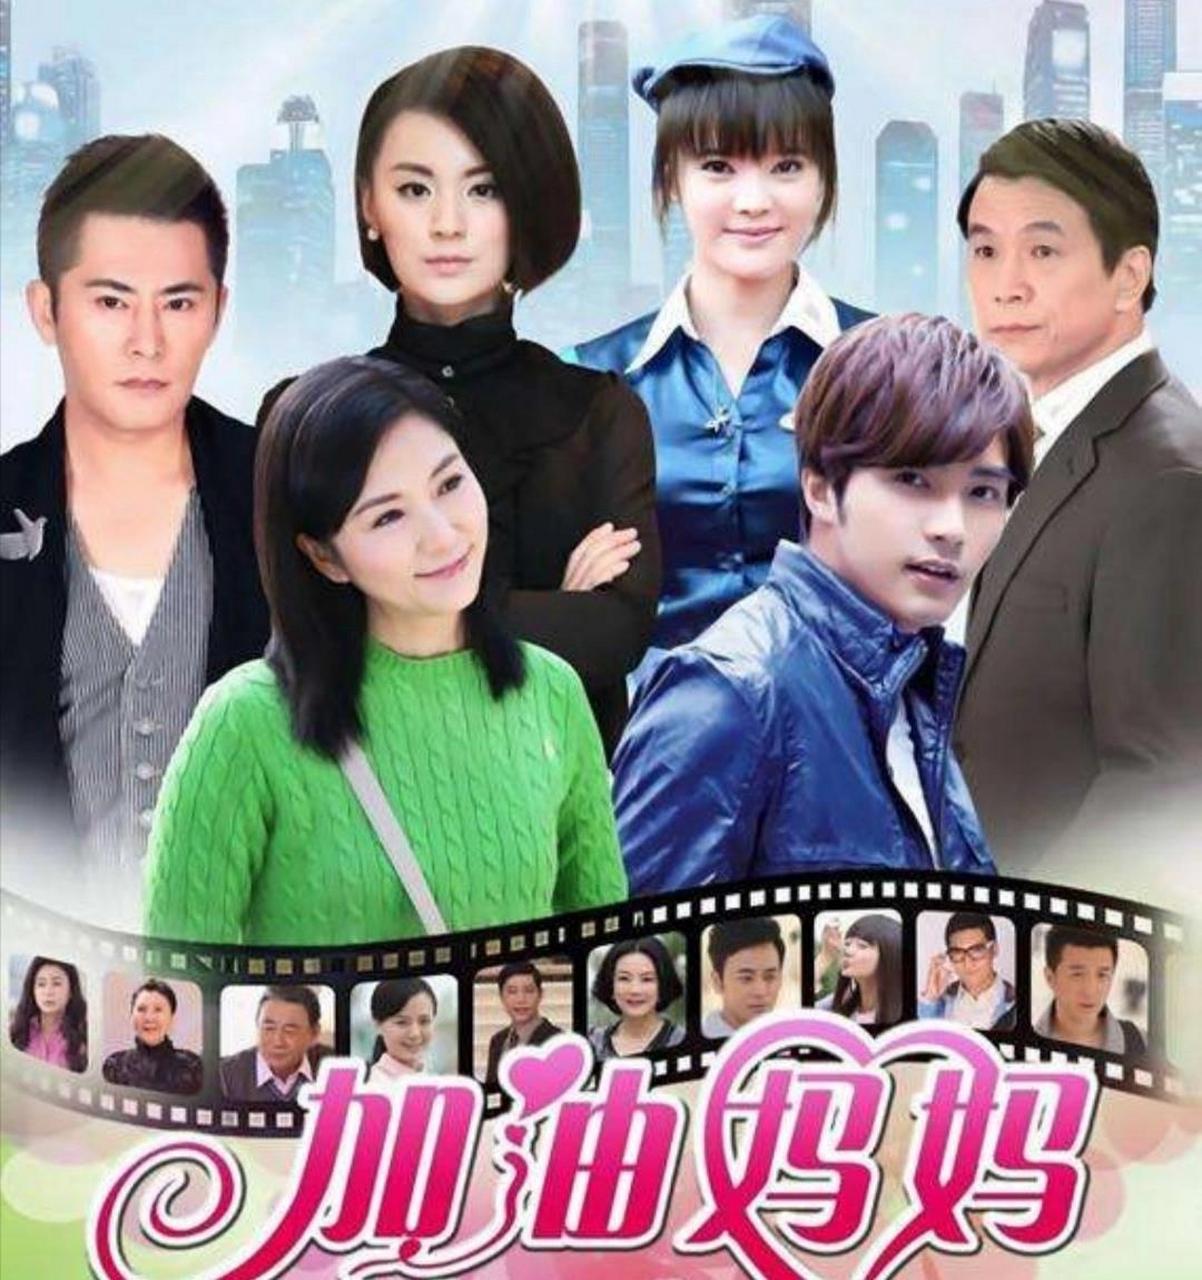 《加油妈妈》由贺军翔,宗峰岩,张璇和张玉嬿等明星主演的电视剧